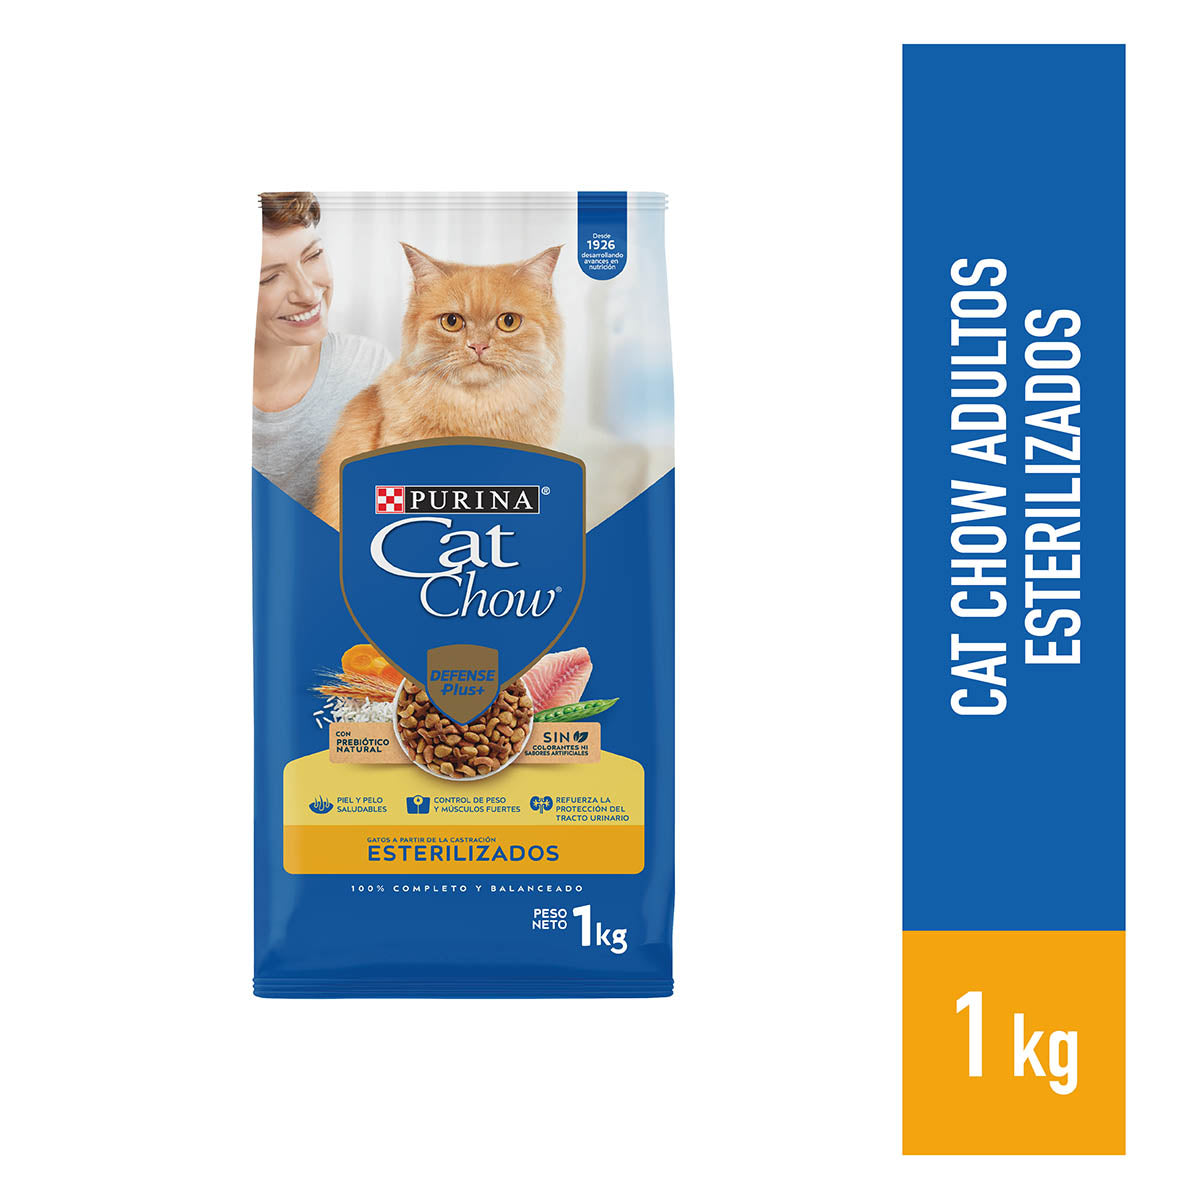 CAT CHOW Esterilizado 1kg